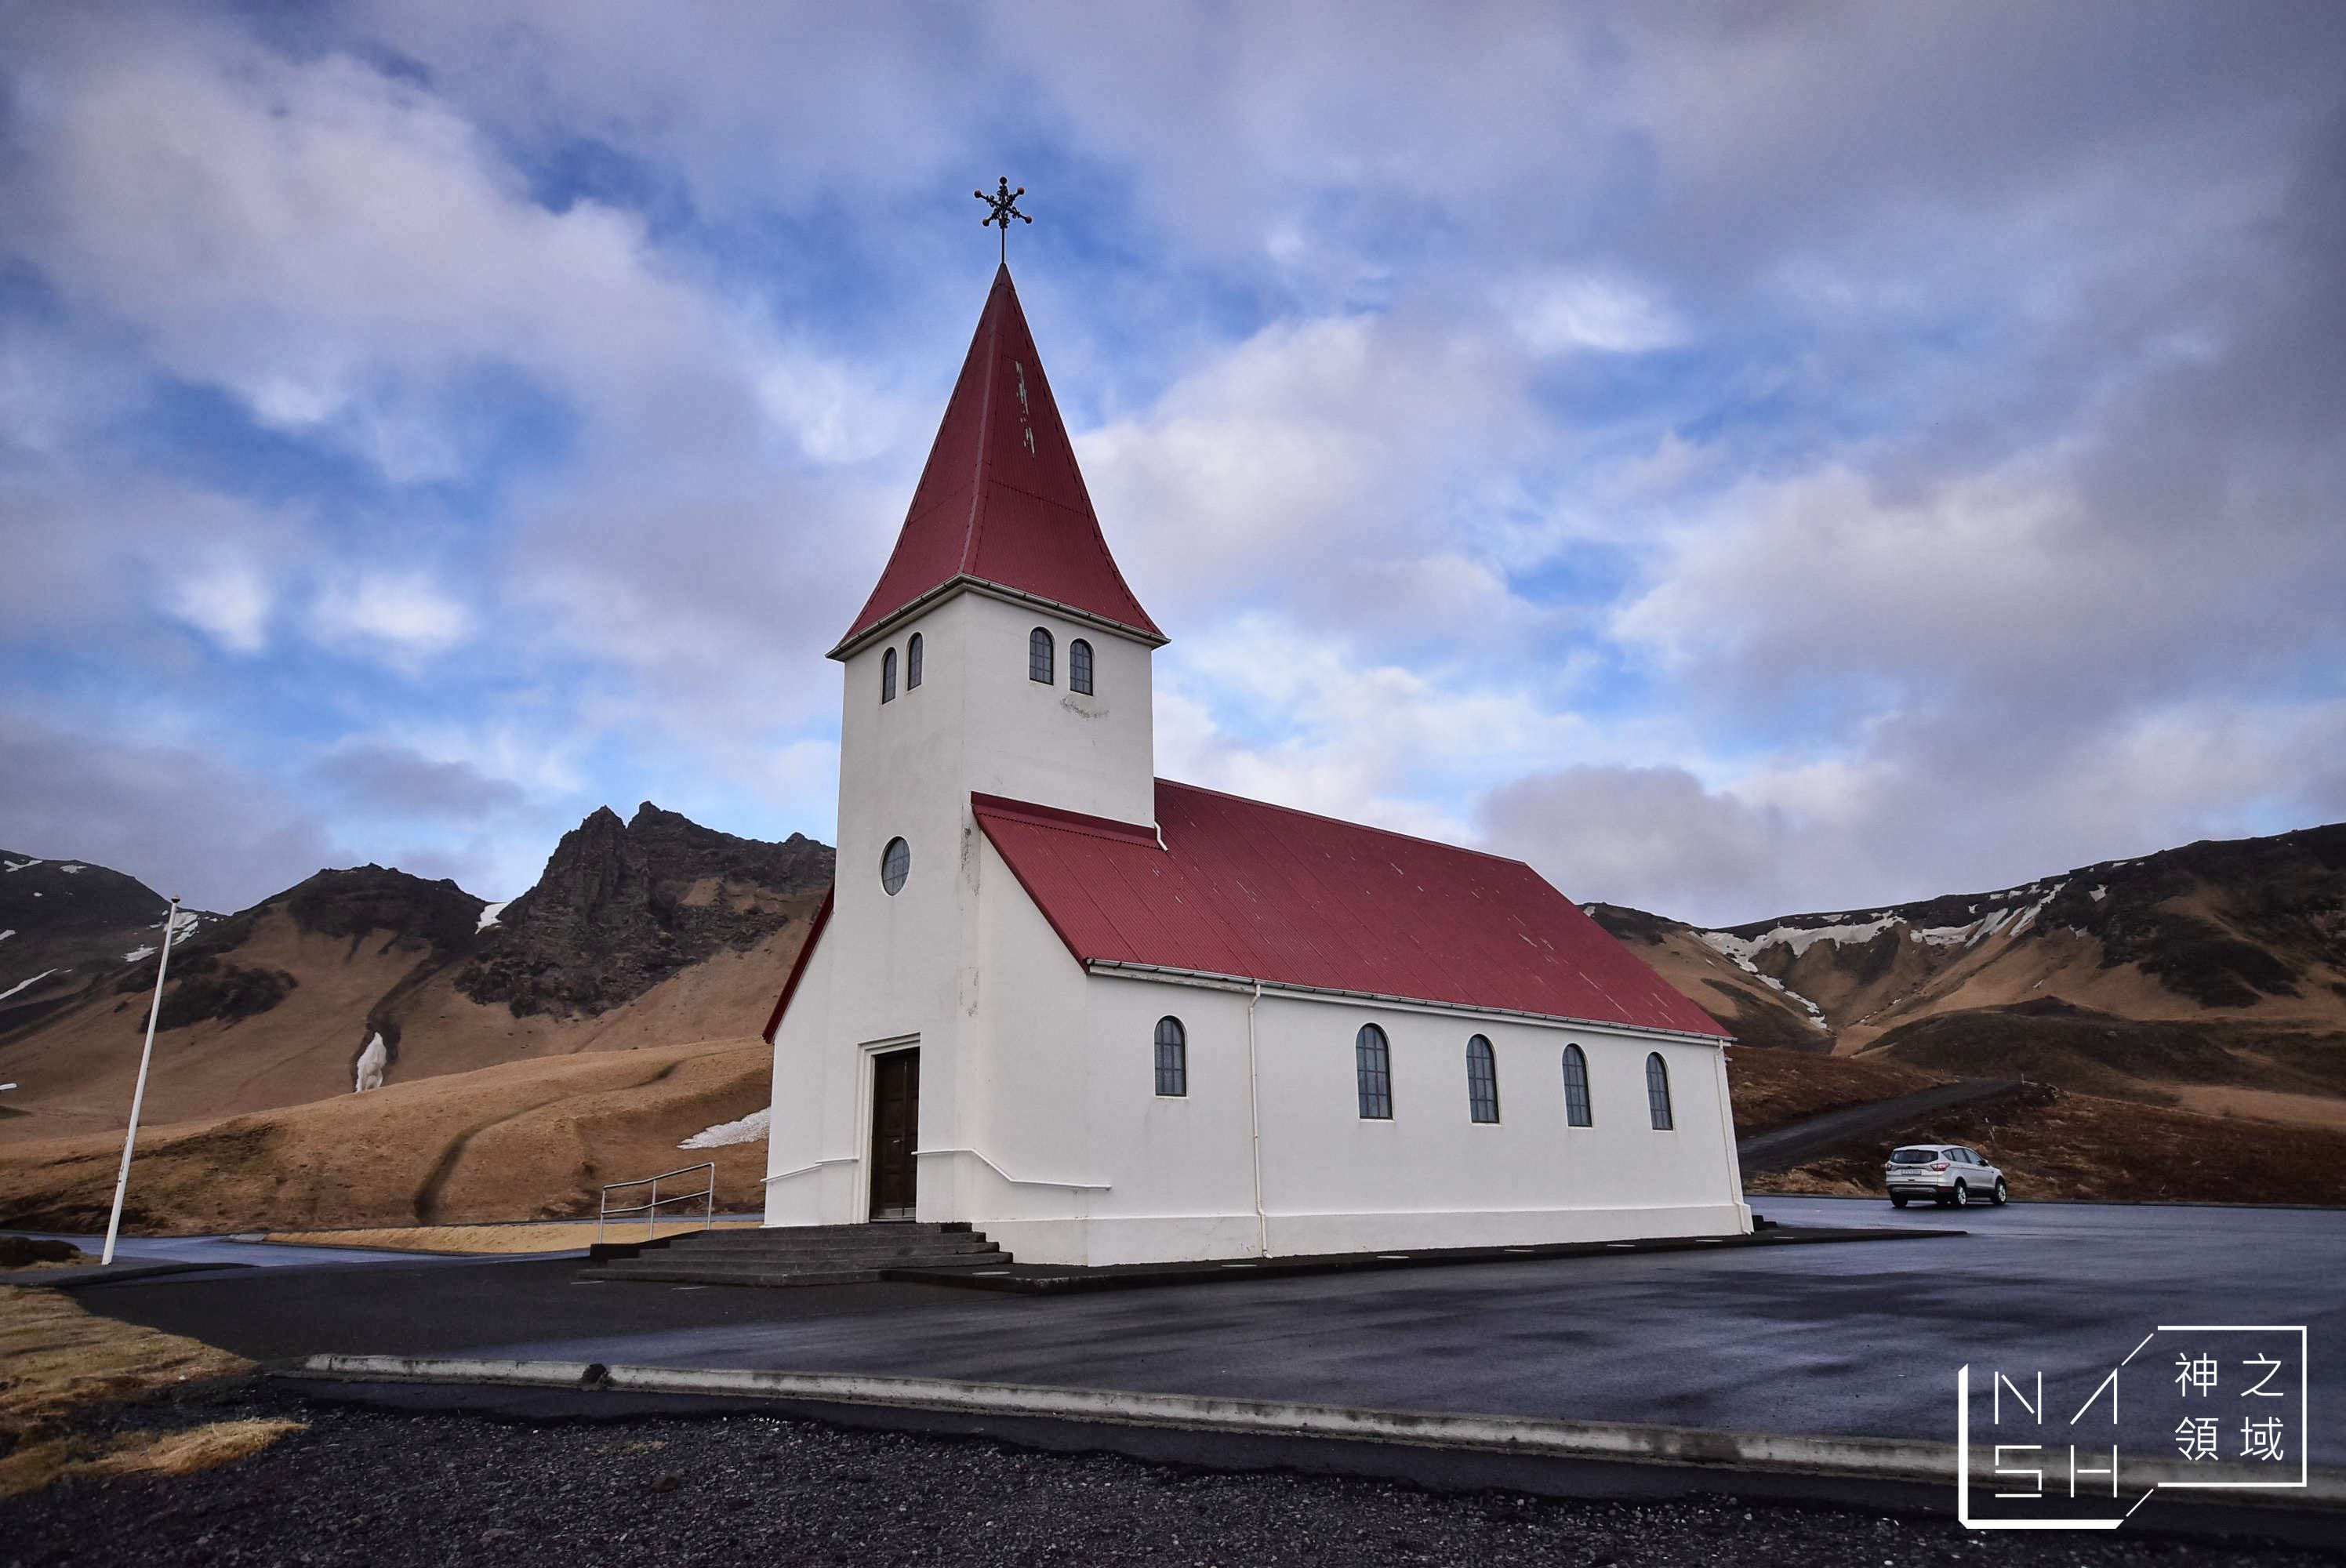 冰島自由行環島景點推薦,冰島自助景點推薦,維克教堂,vik church,Vik i Myrdal Church